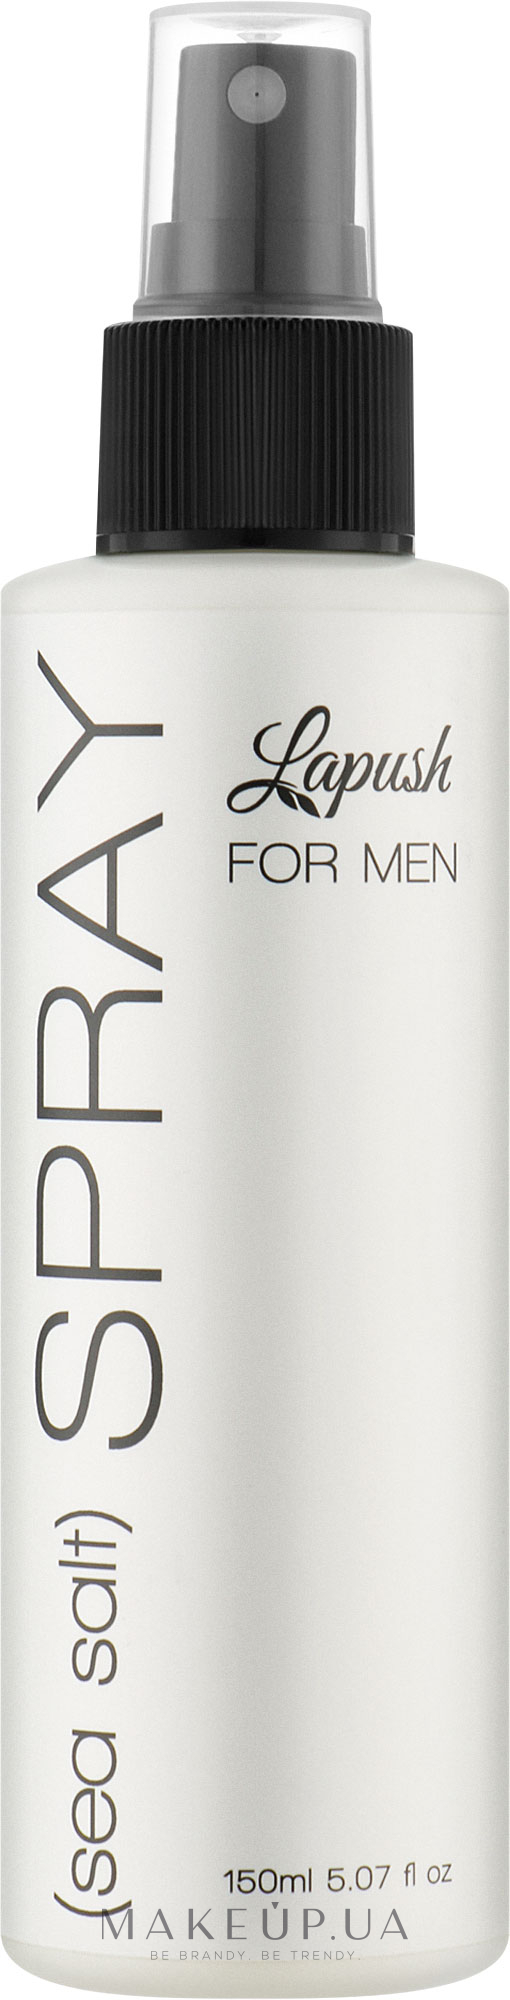 Чоловічий сольовий спрей для волосся - Lapush For Men Sea Salt Spray — фото 150ml